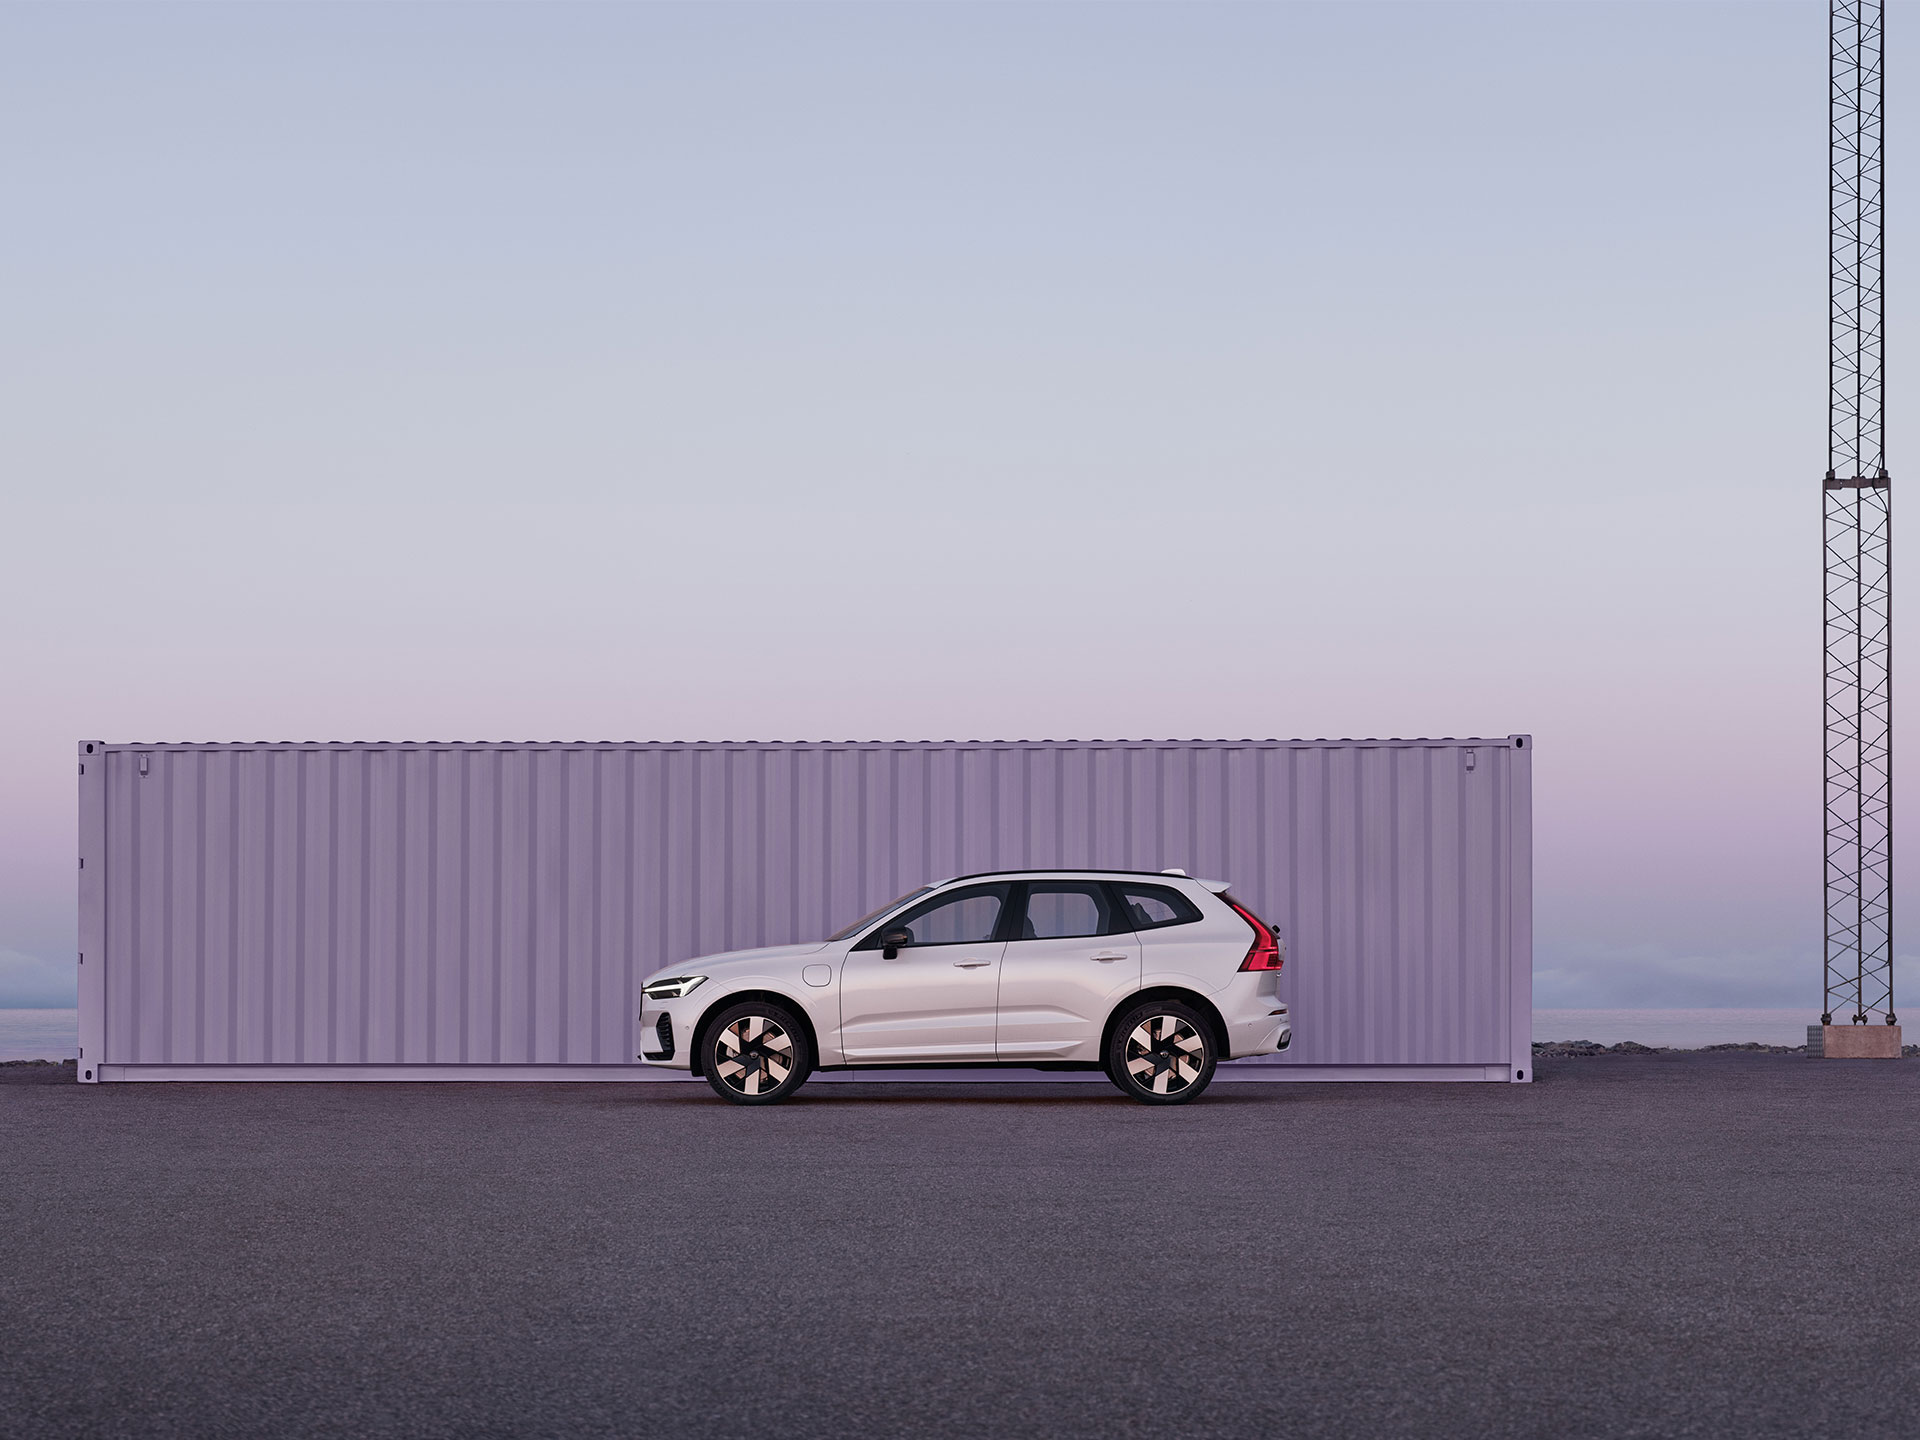 Ein in einer kargen Industrieumgebung geparkter Volvo XC60 im violetten und rosafarbenen Licht eines farbenfrohen Sonnenaufgangs.